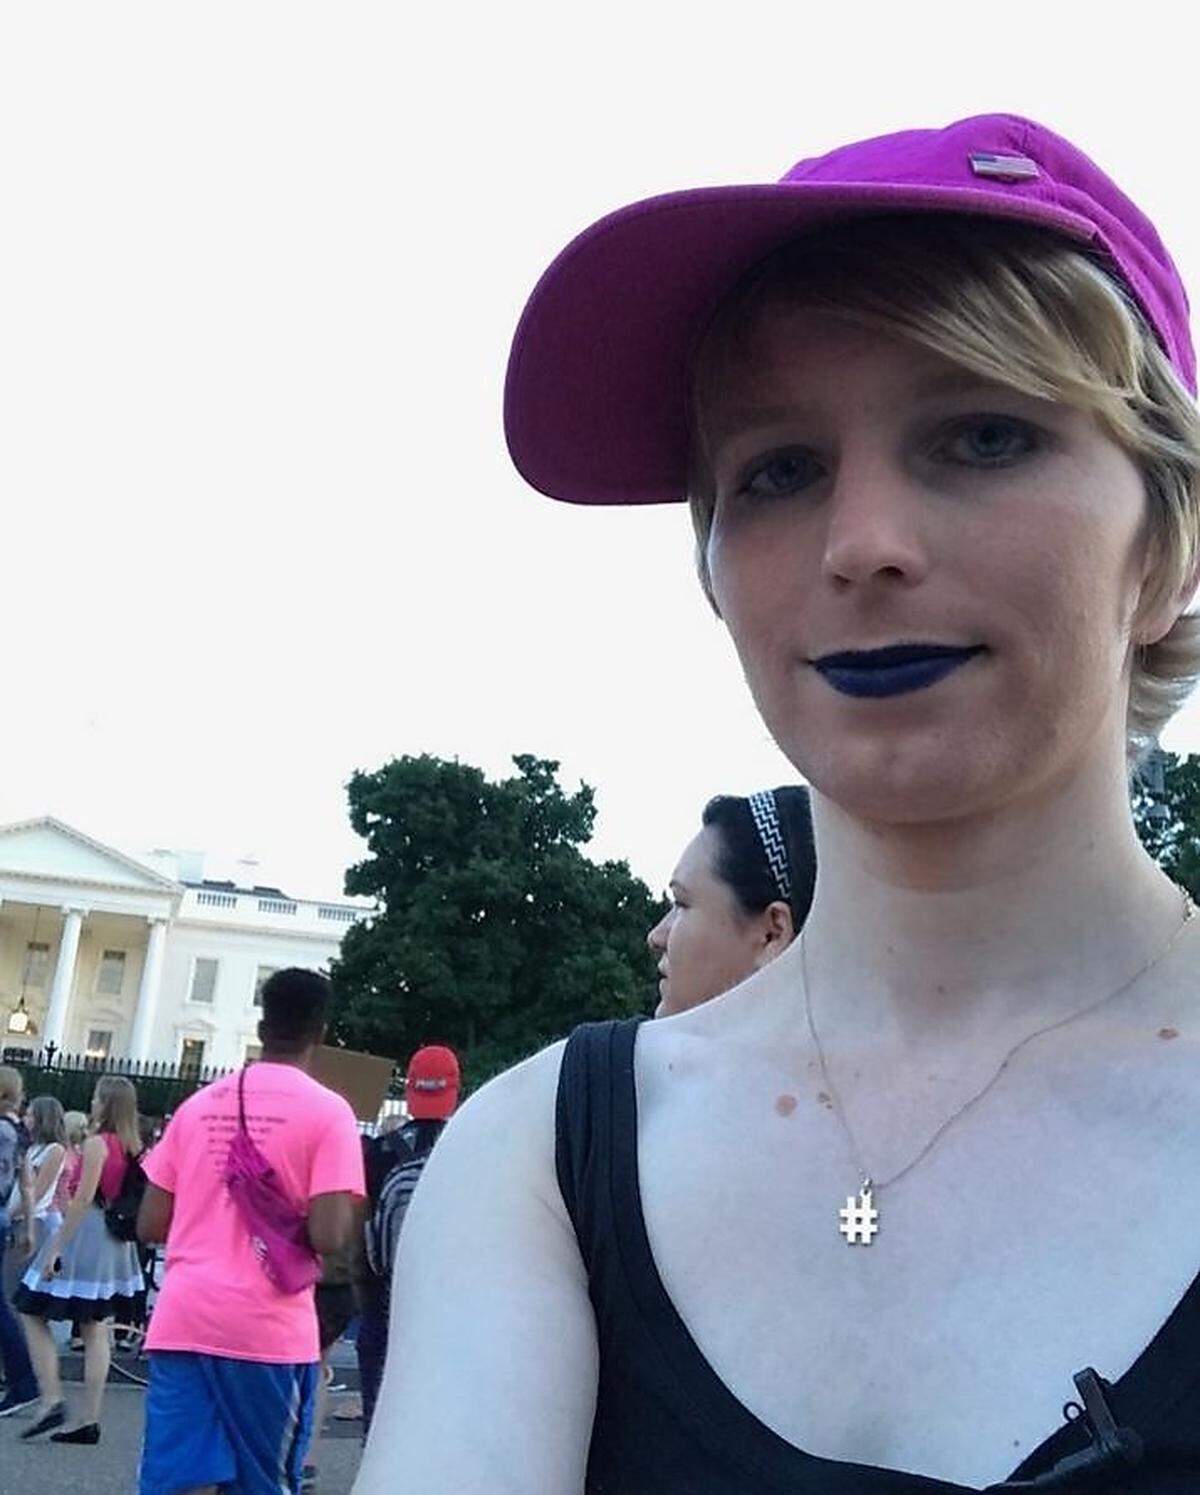 Manning betätigt sich mittlerweile als Aktivistin für Transgender-Rechte. Auch ihre politischen Aktionen teilt sie mit ihren Followern.